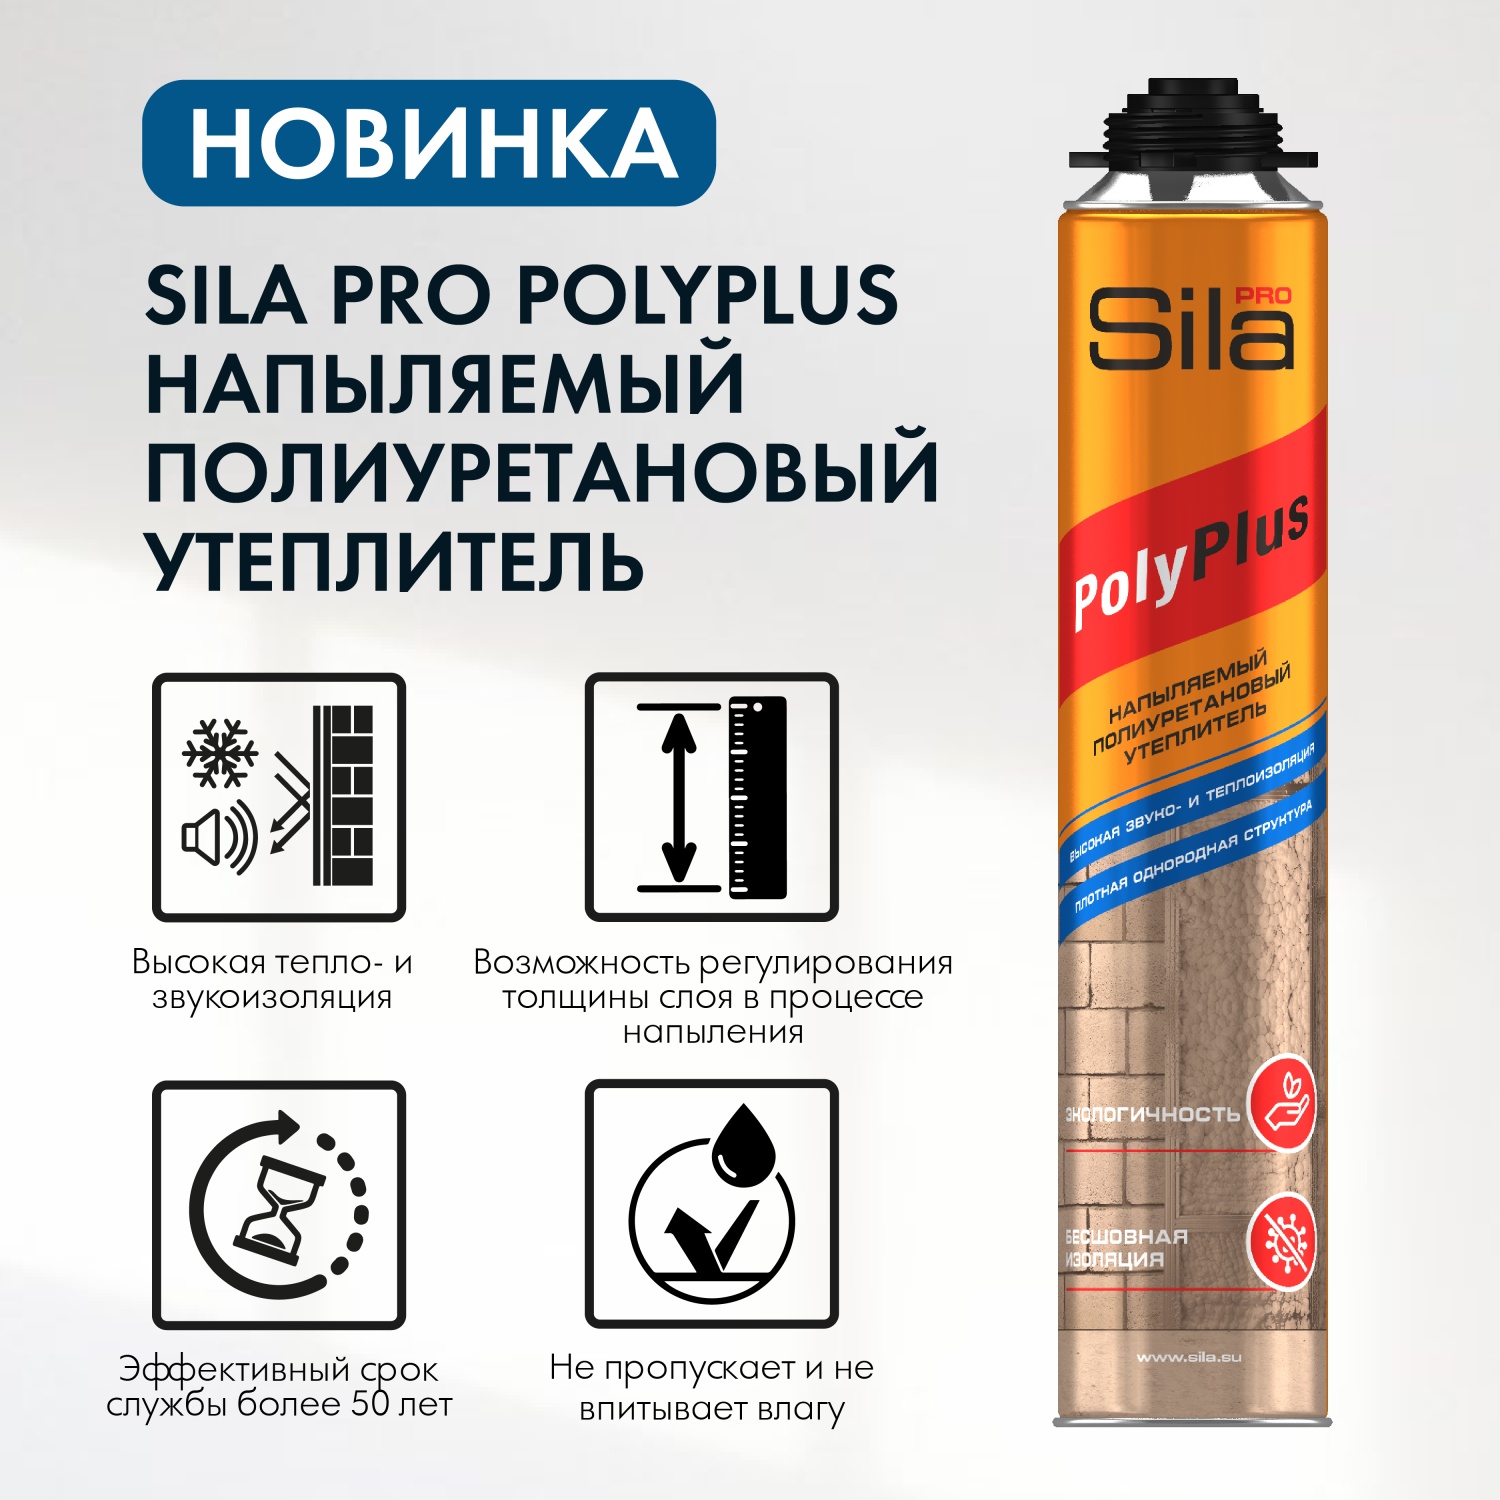 Новинка! Полиуретановый напыляемый утеплитель Sila PRO Polyplus